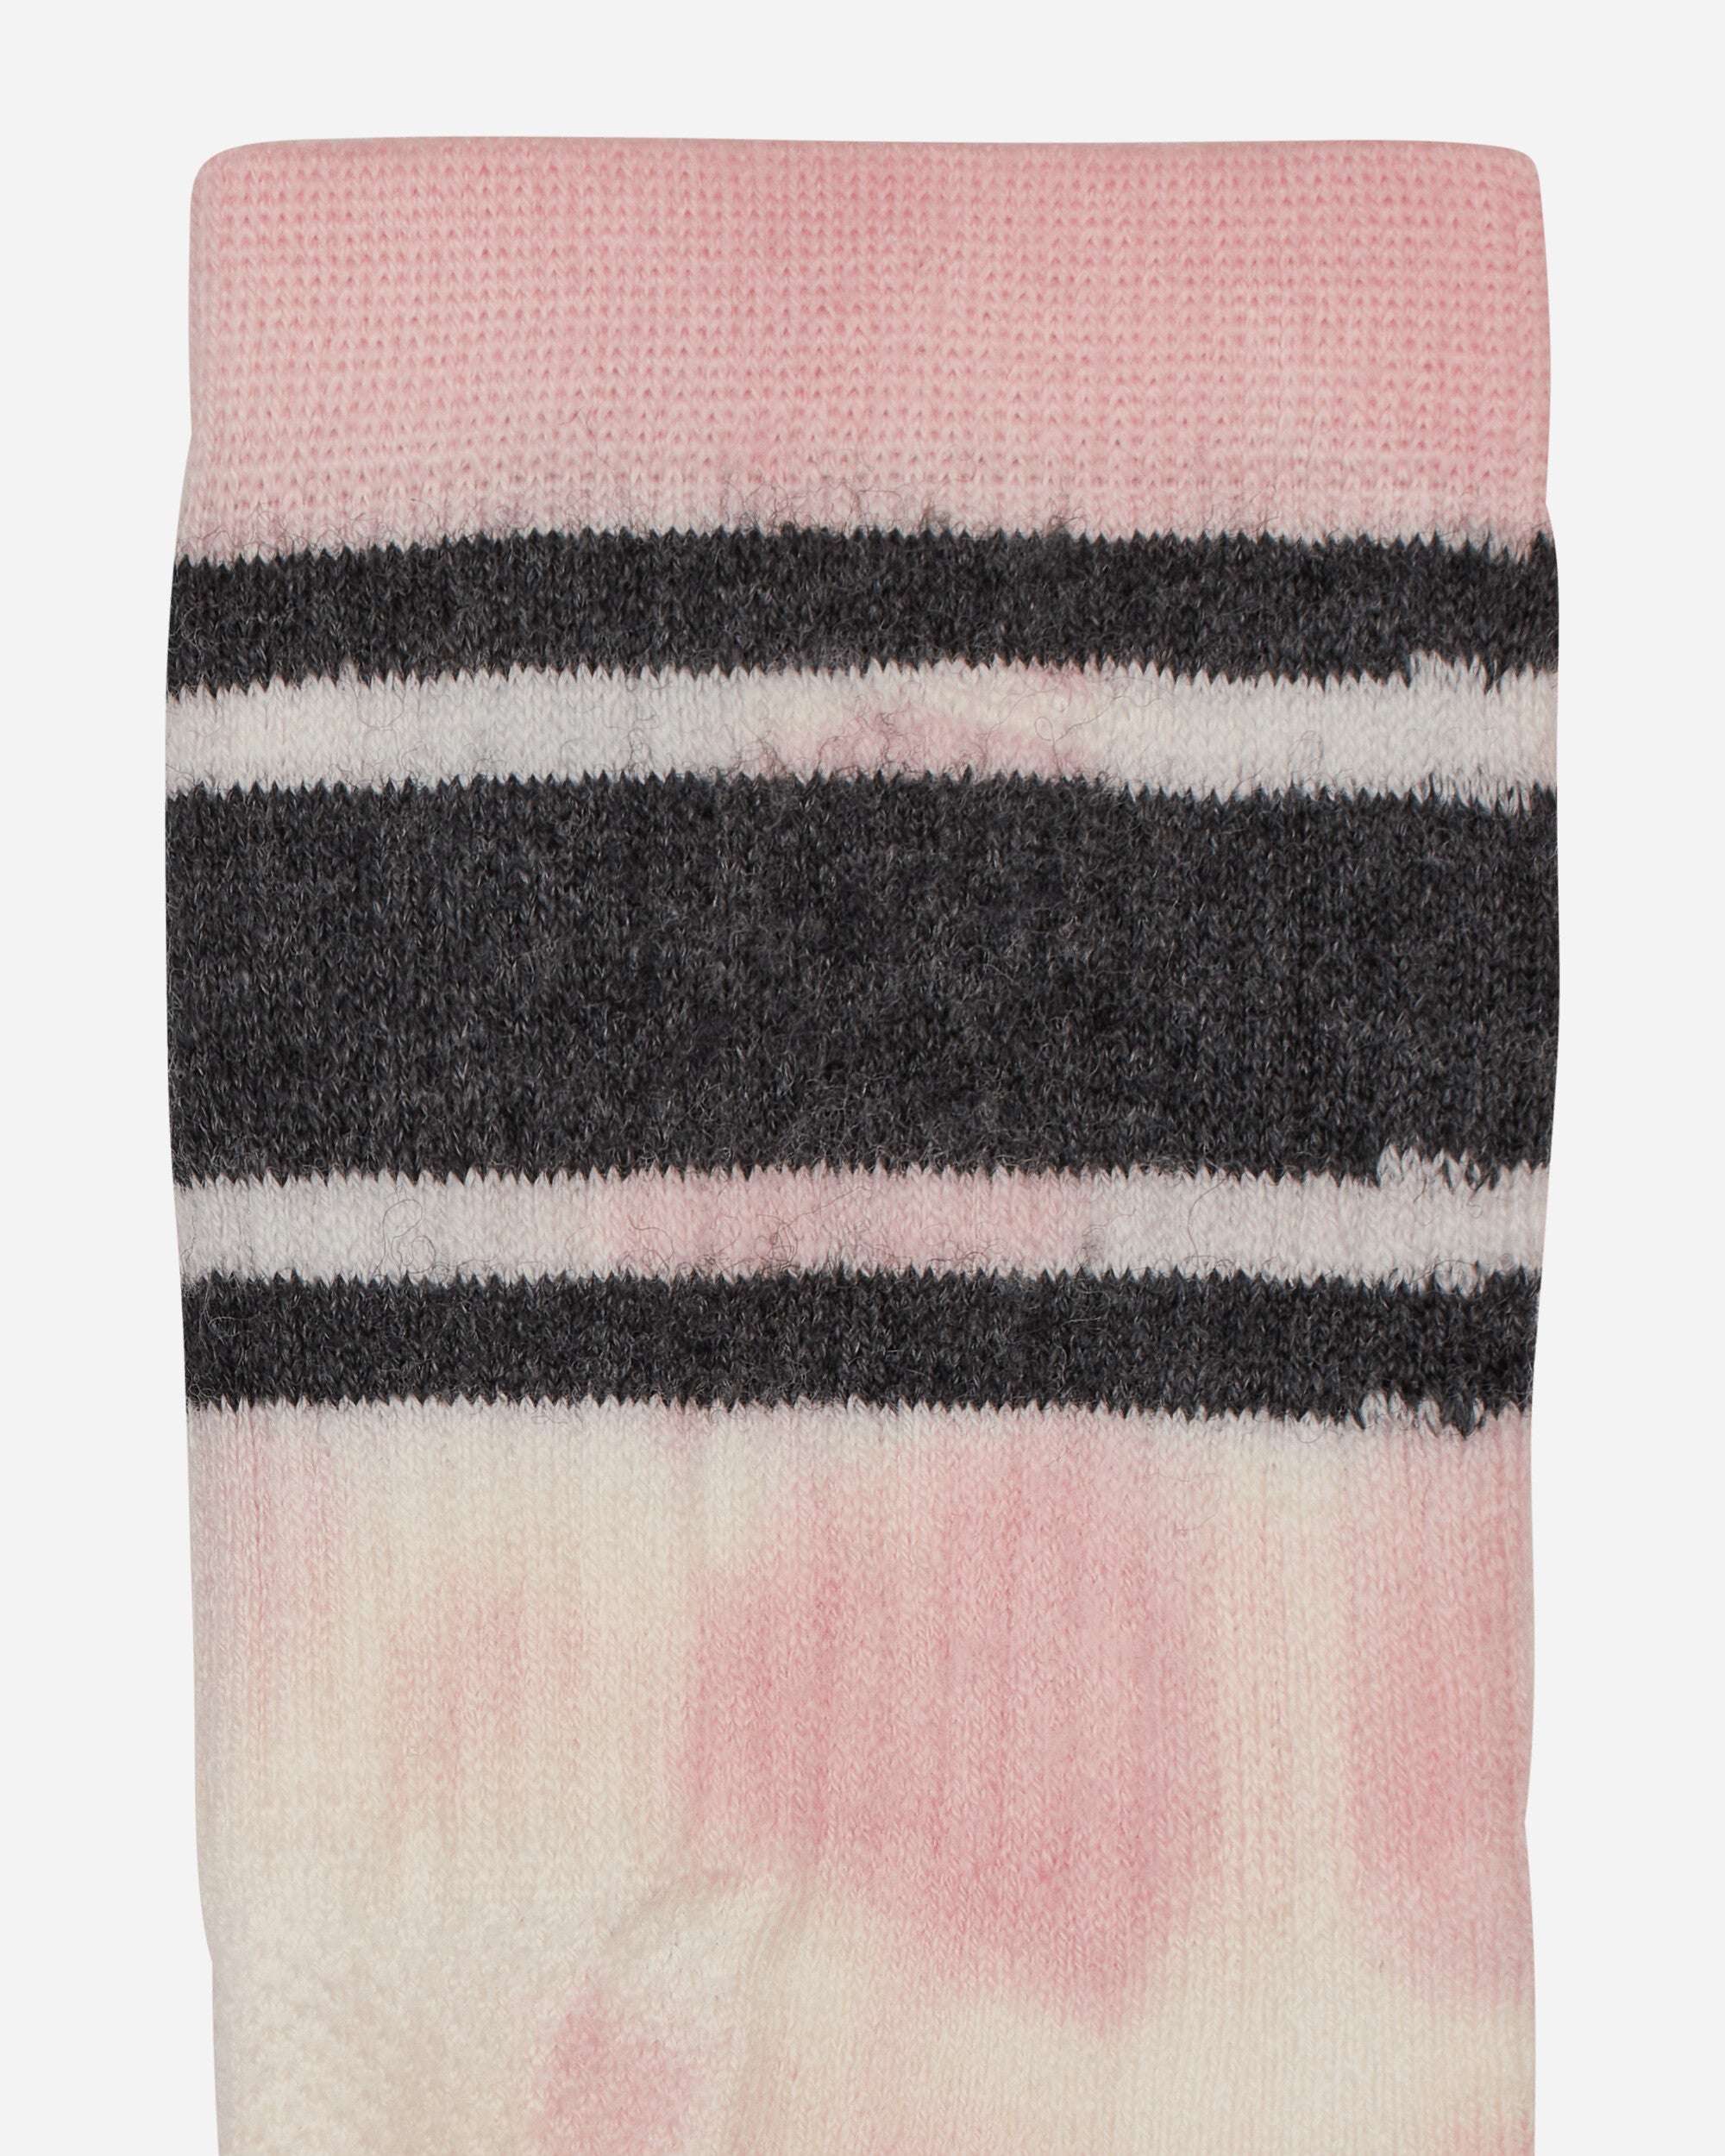 Satisfy Merino Tube Socks Rock Salt Tie-Dye Underwear Socks 5110 RS